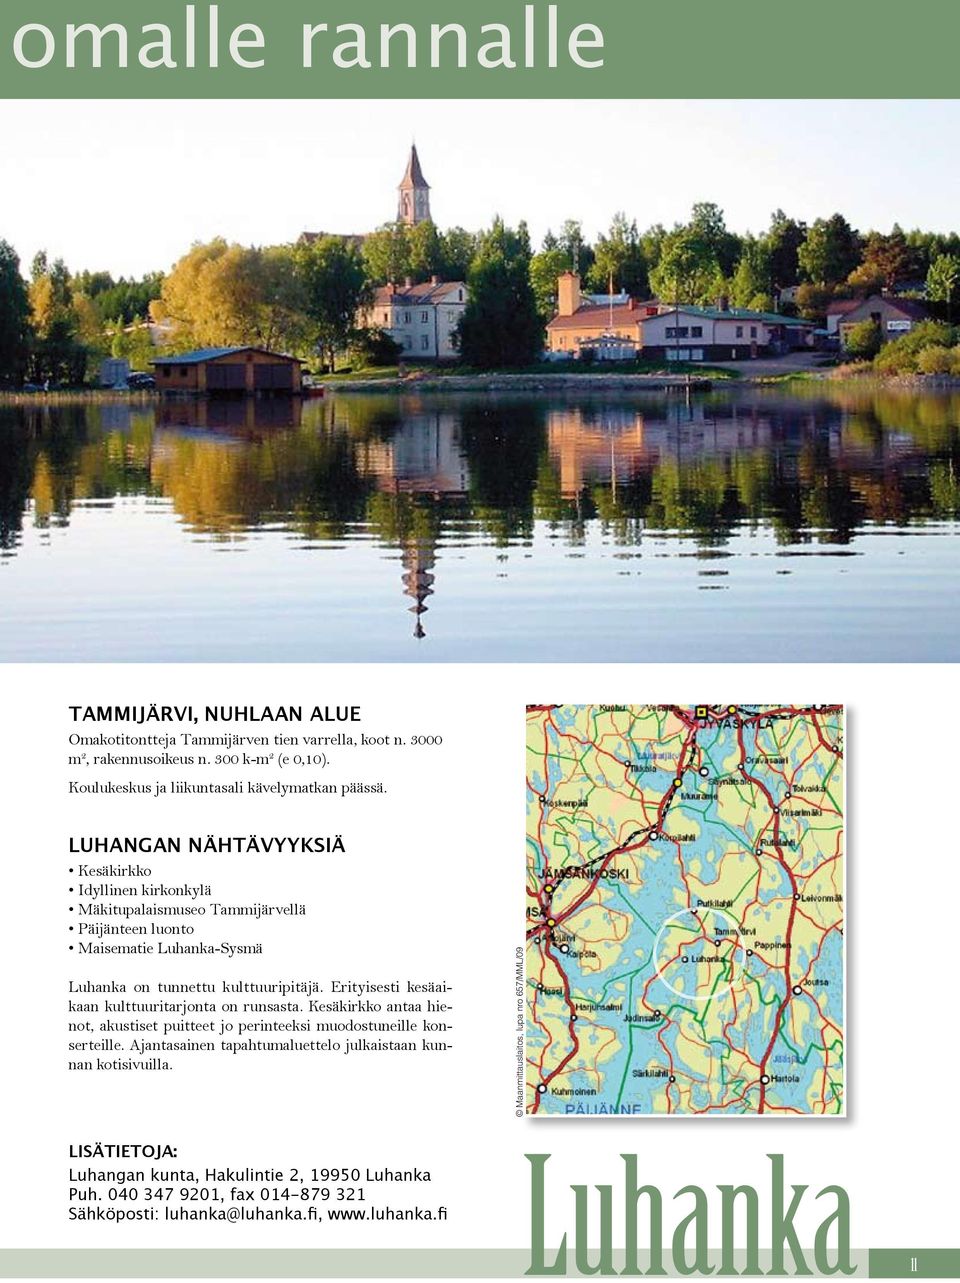 LUHANGAN NÄHTÄVYYKSIÄ Kesäkirkko Idyllinen kirkonkylä Mäkitupalaismuseo Tammijärvellä Päijänteen luonto Maisematie Luhanka- Luhanka on tunnettu kulttuuripitäjä.